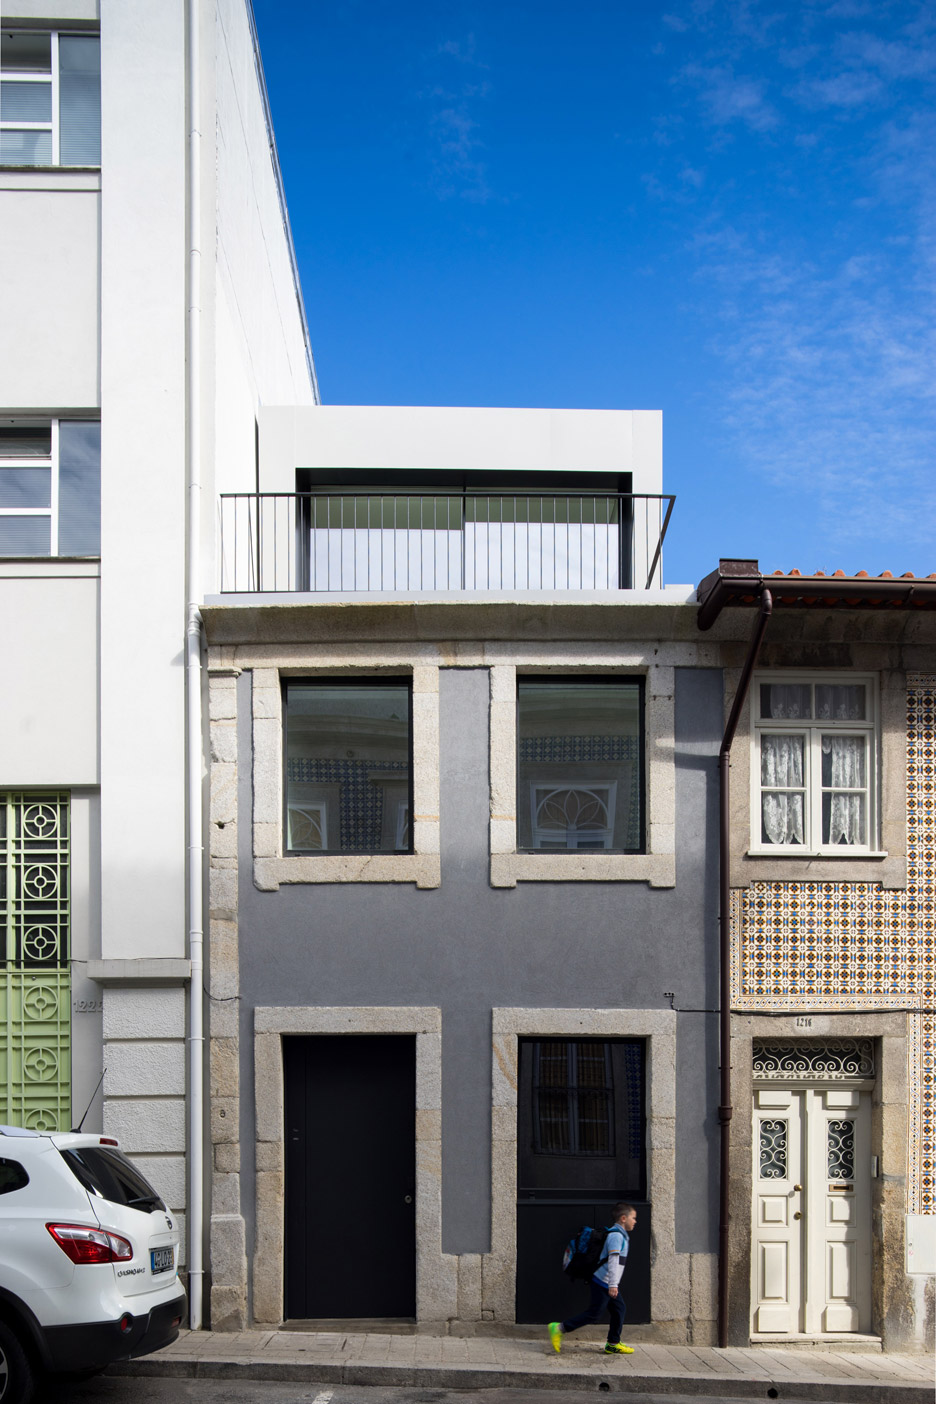 Casa Bonjardim by Atka Arquitectos